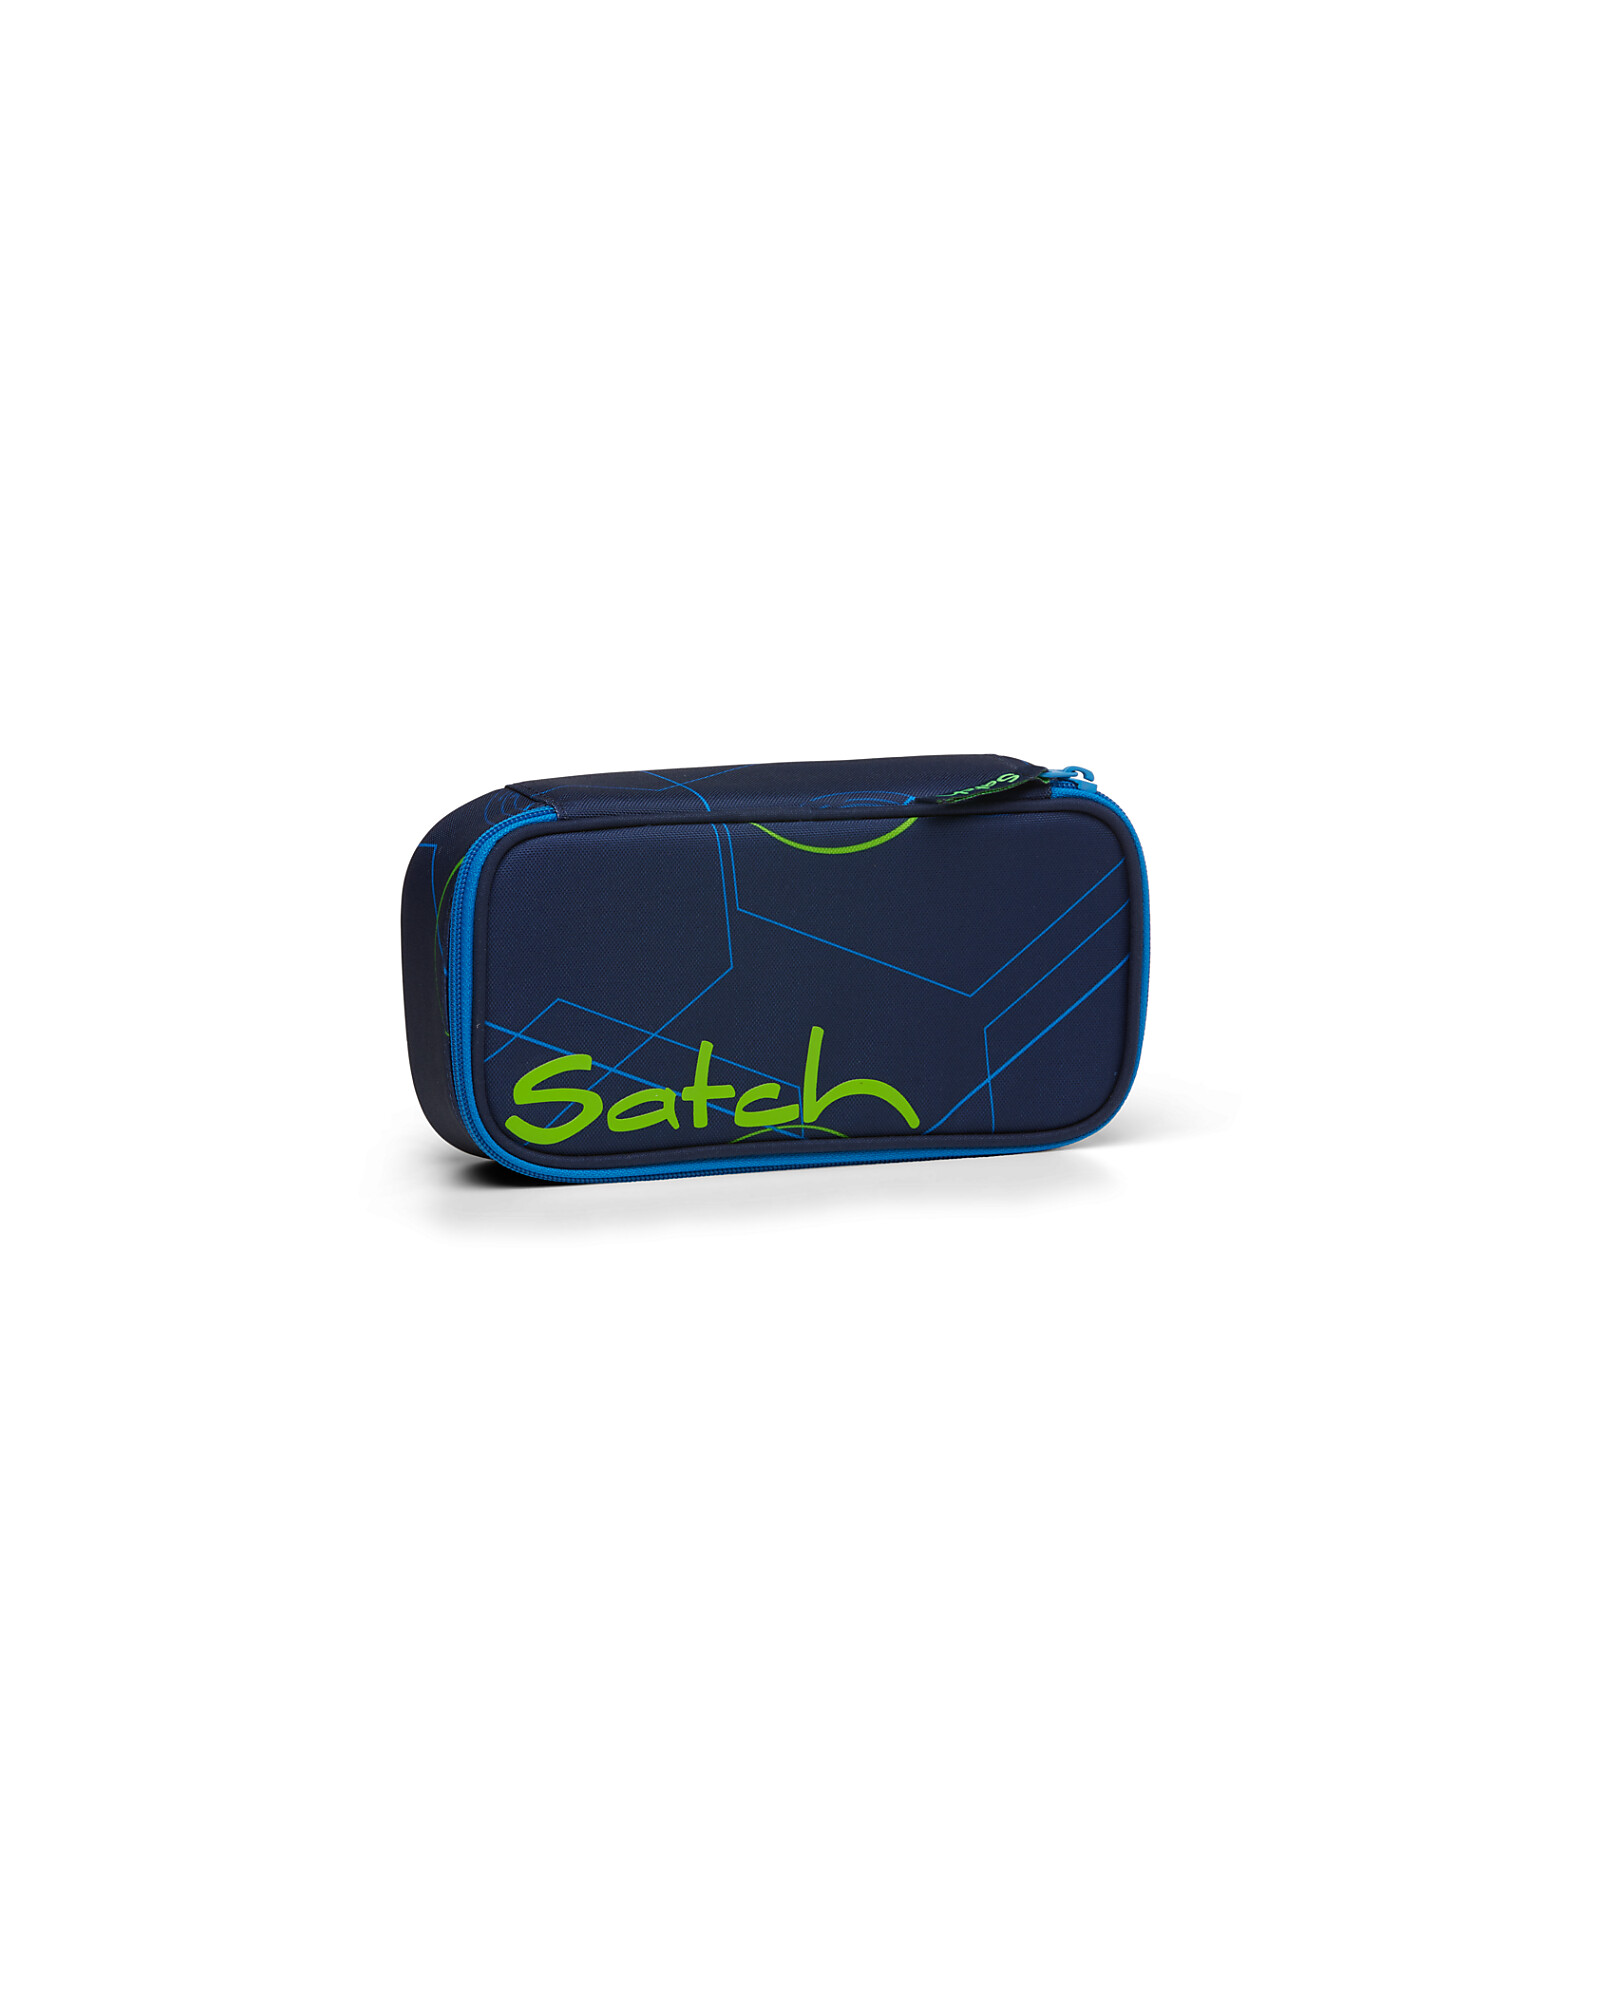 Satch Astuccio Rigido - Blue Tech - Blu/Verde - Inclusa Squadra